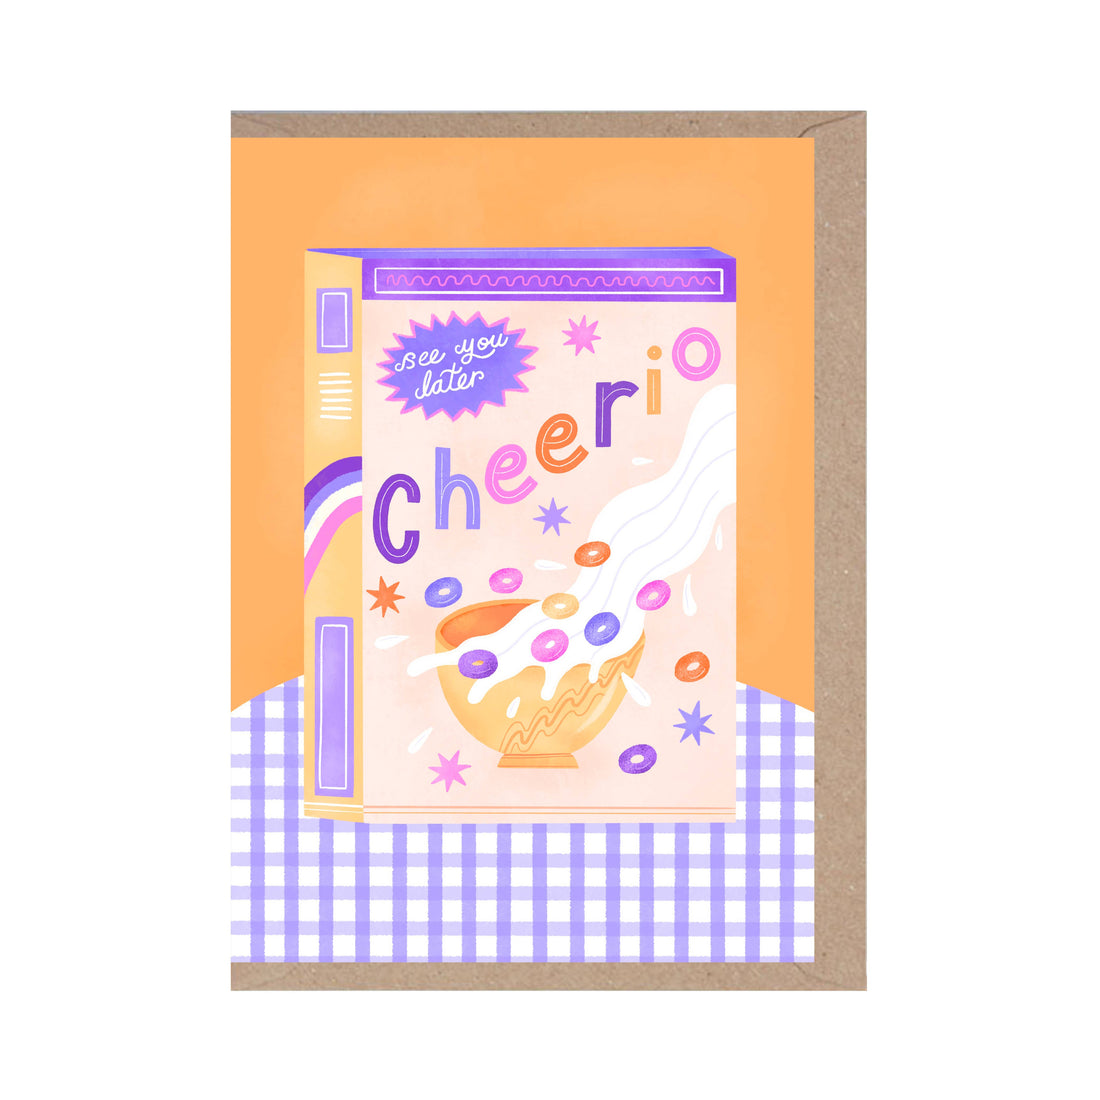 Cheerio